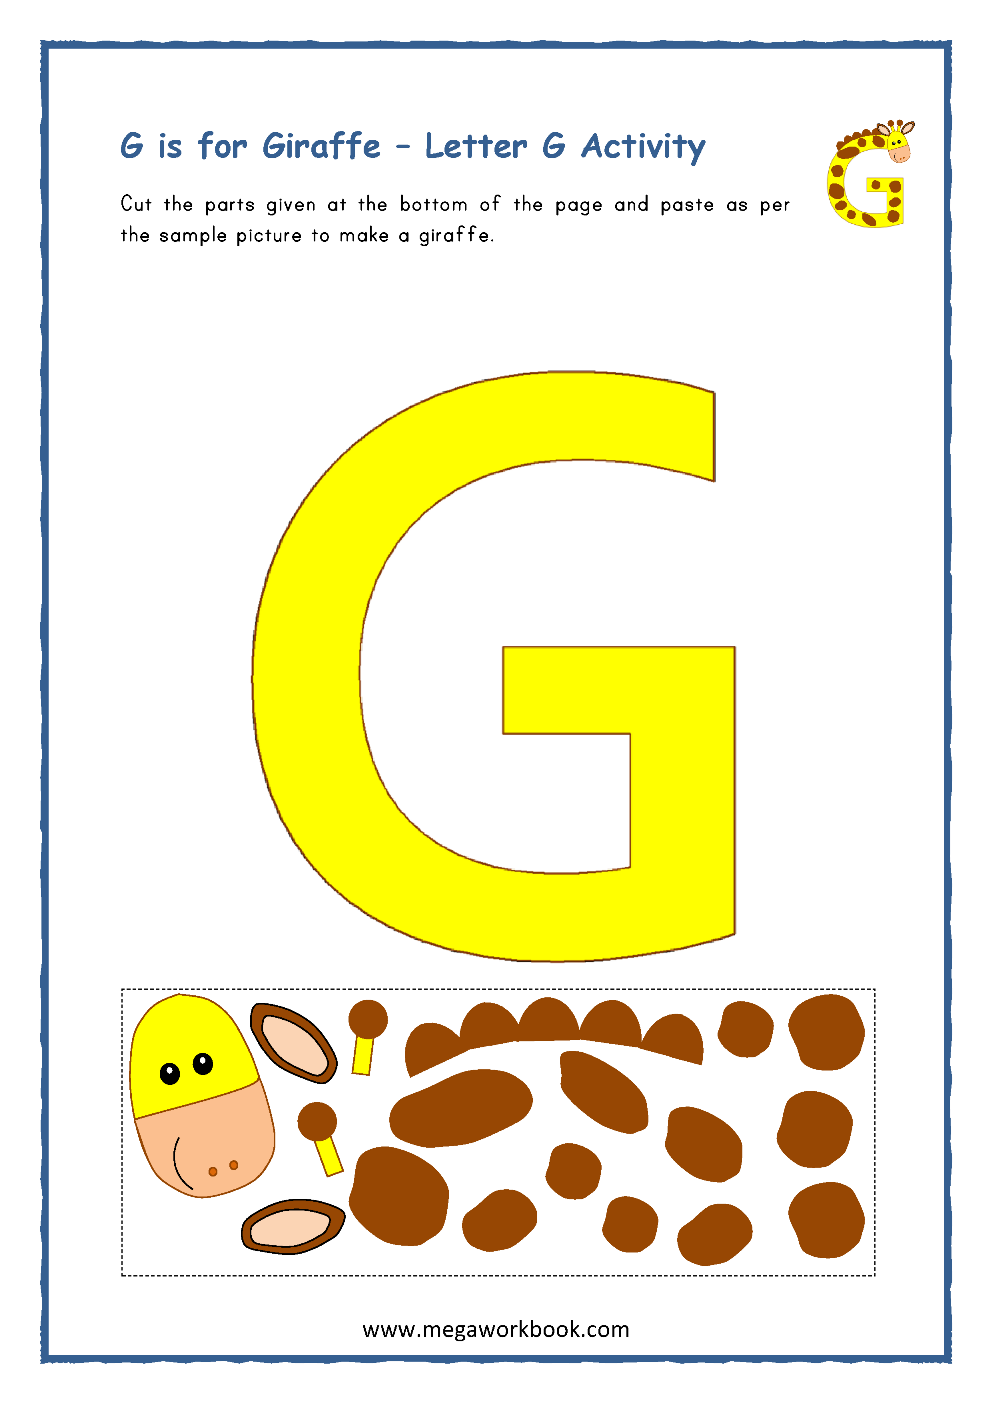 Letter G Activities Letter G Worksheets Letter G Crafts For